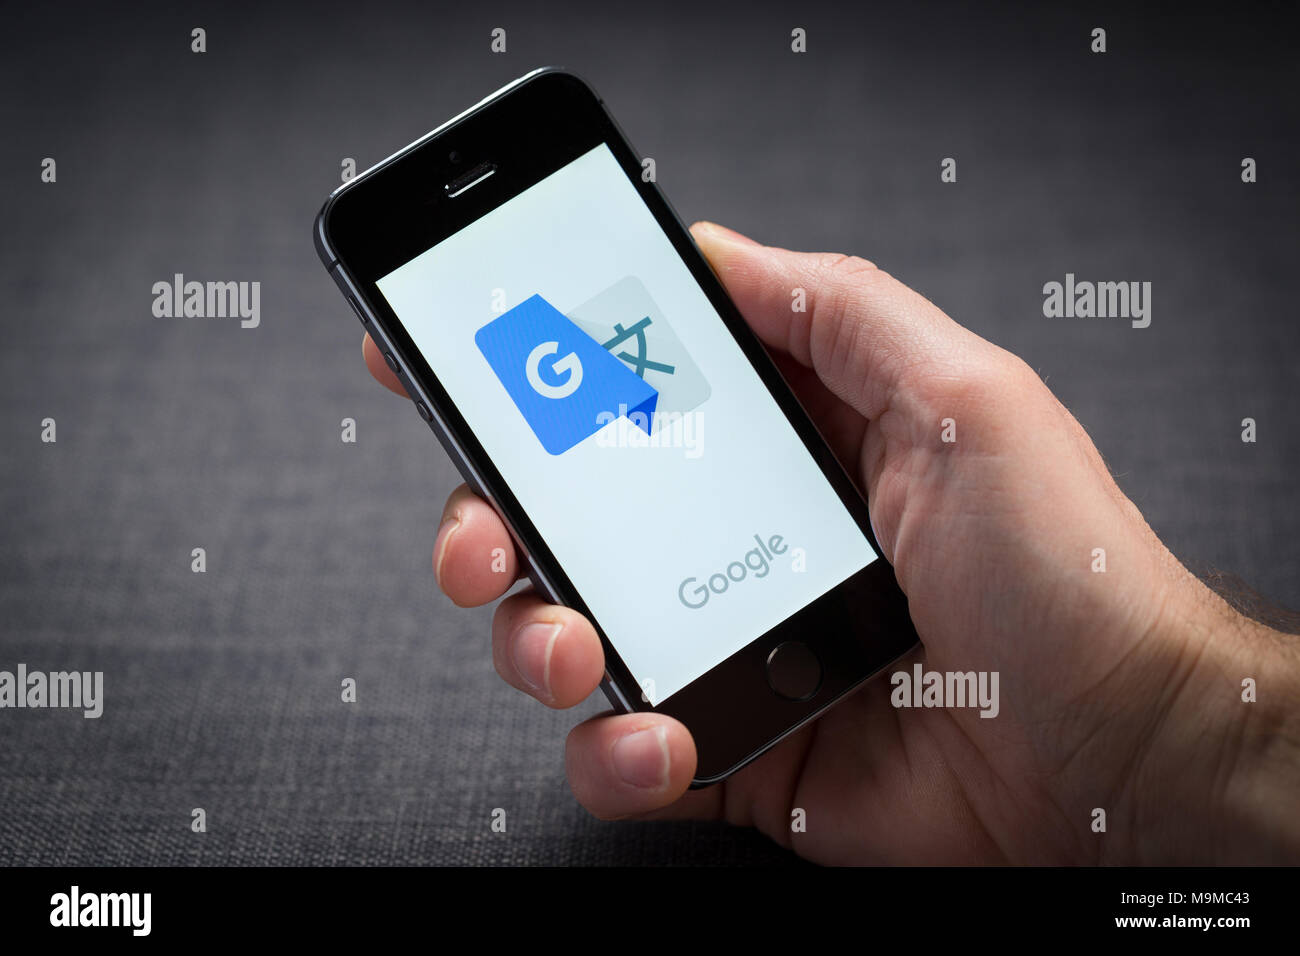 Google Translate chega ao iPhone e impressiona